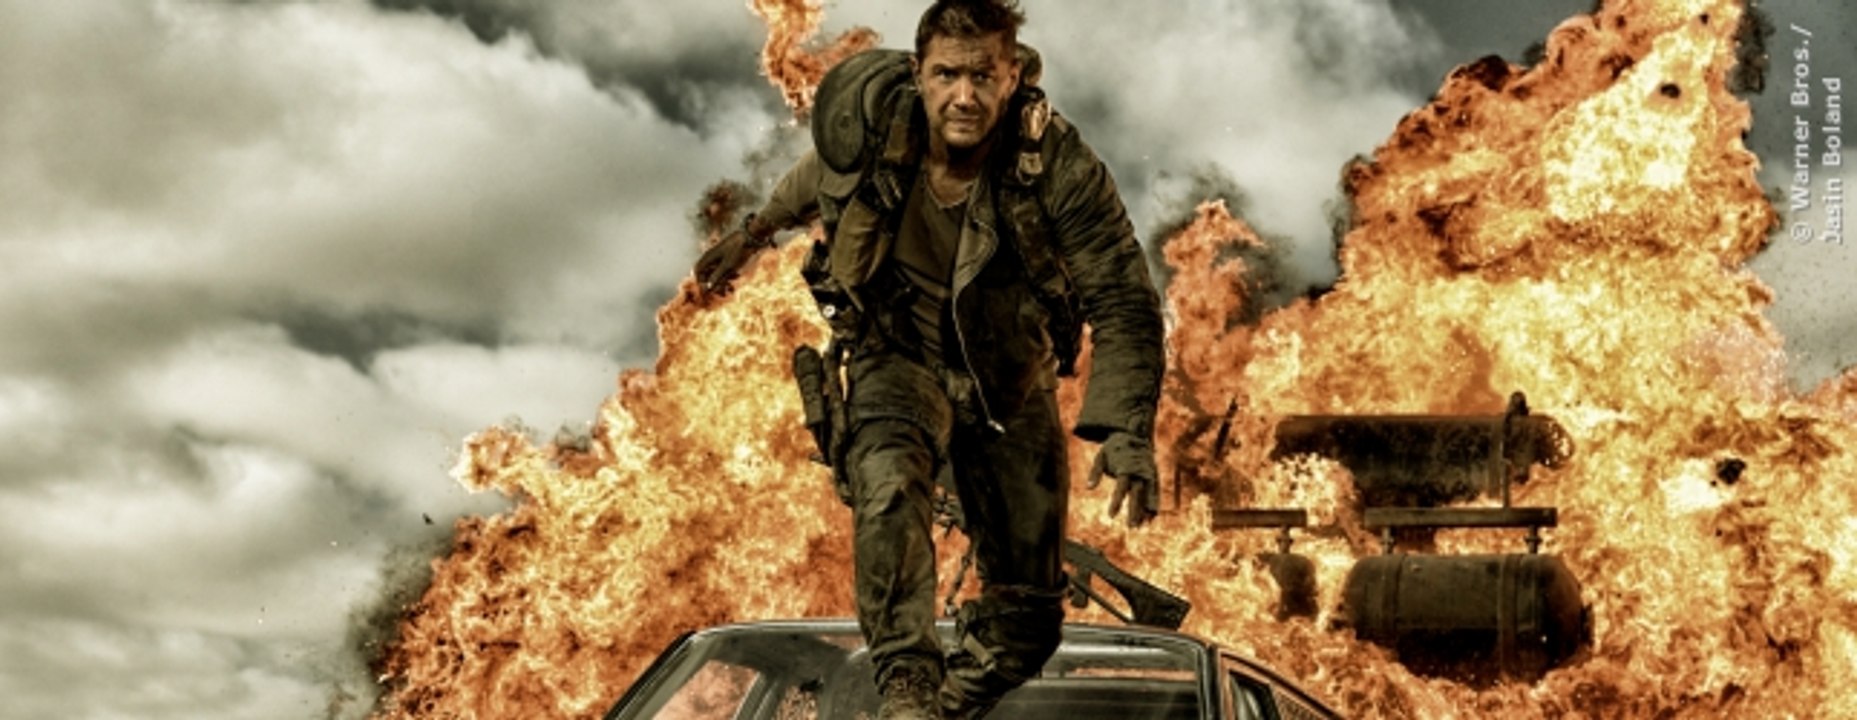 Mad Max 4 - Fury Road Trailer 2 (deutsch)